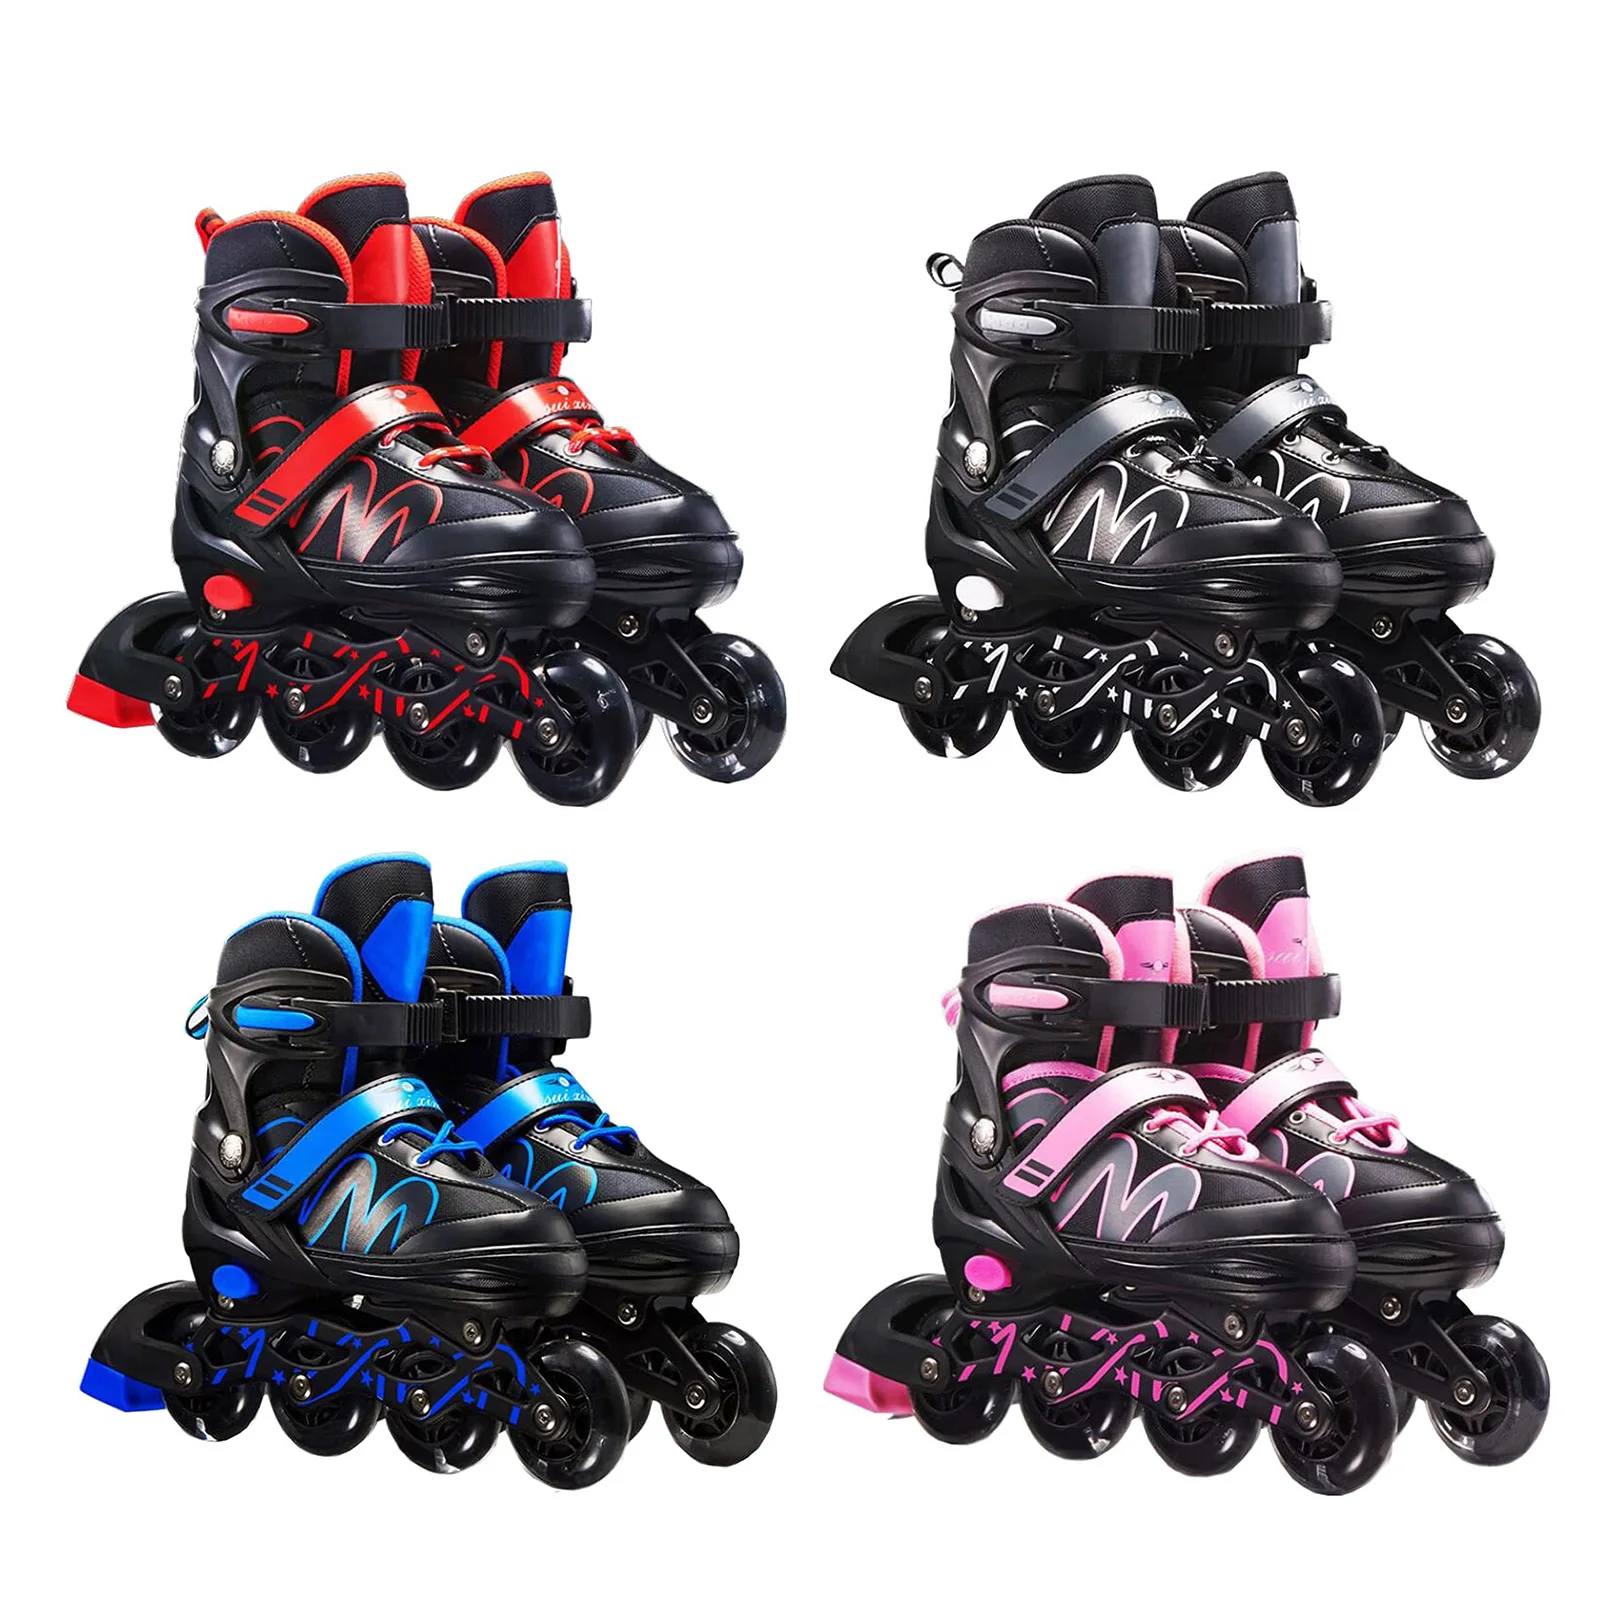 

Детские роликовые коньки регулируемые размеры роликовые коньки тройная защита дышащие роликовые коньки для начинающих детей взрослых